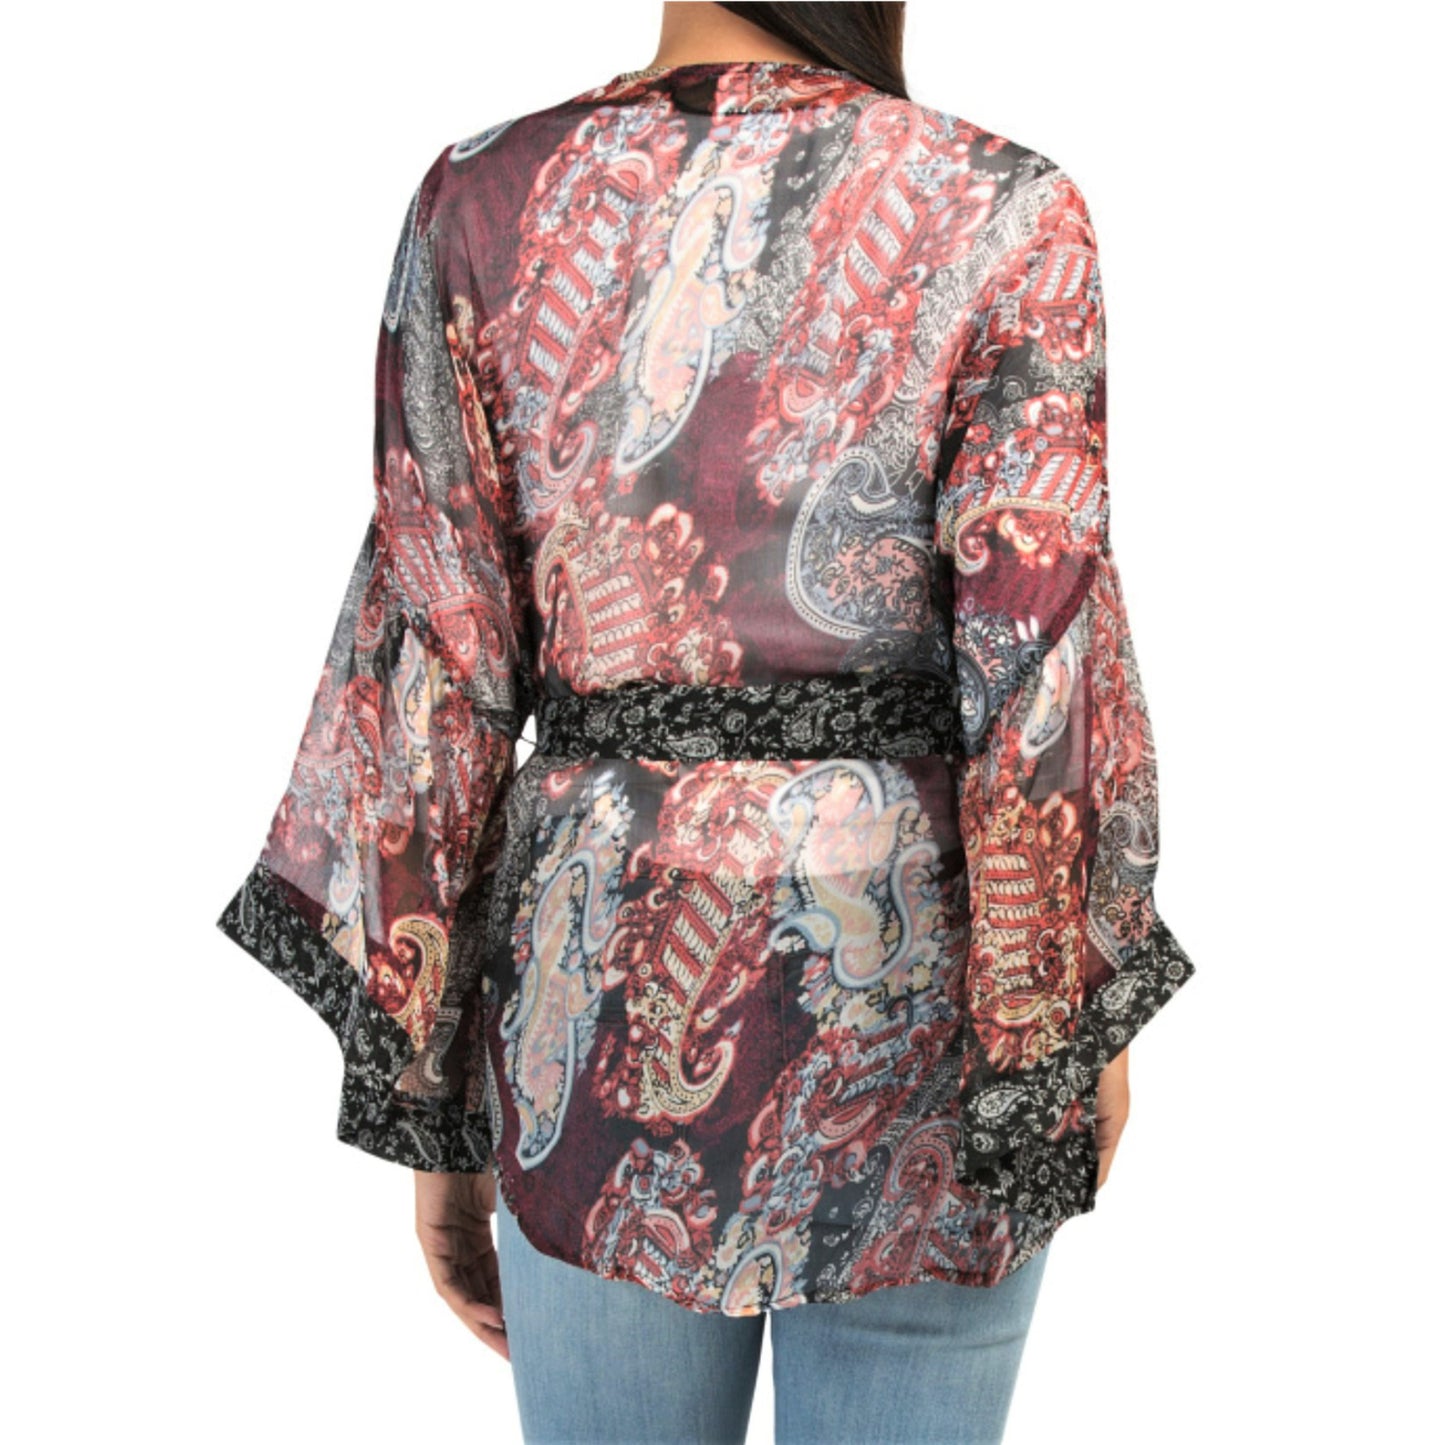 Steve Madden Women's Boho Semi-sheer Paisley Print Belted Kimono Cover-Up / Top